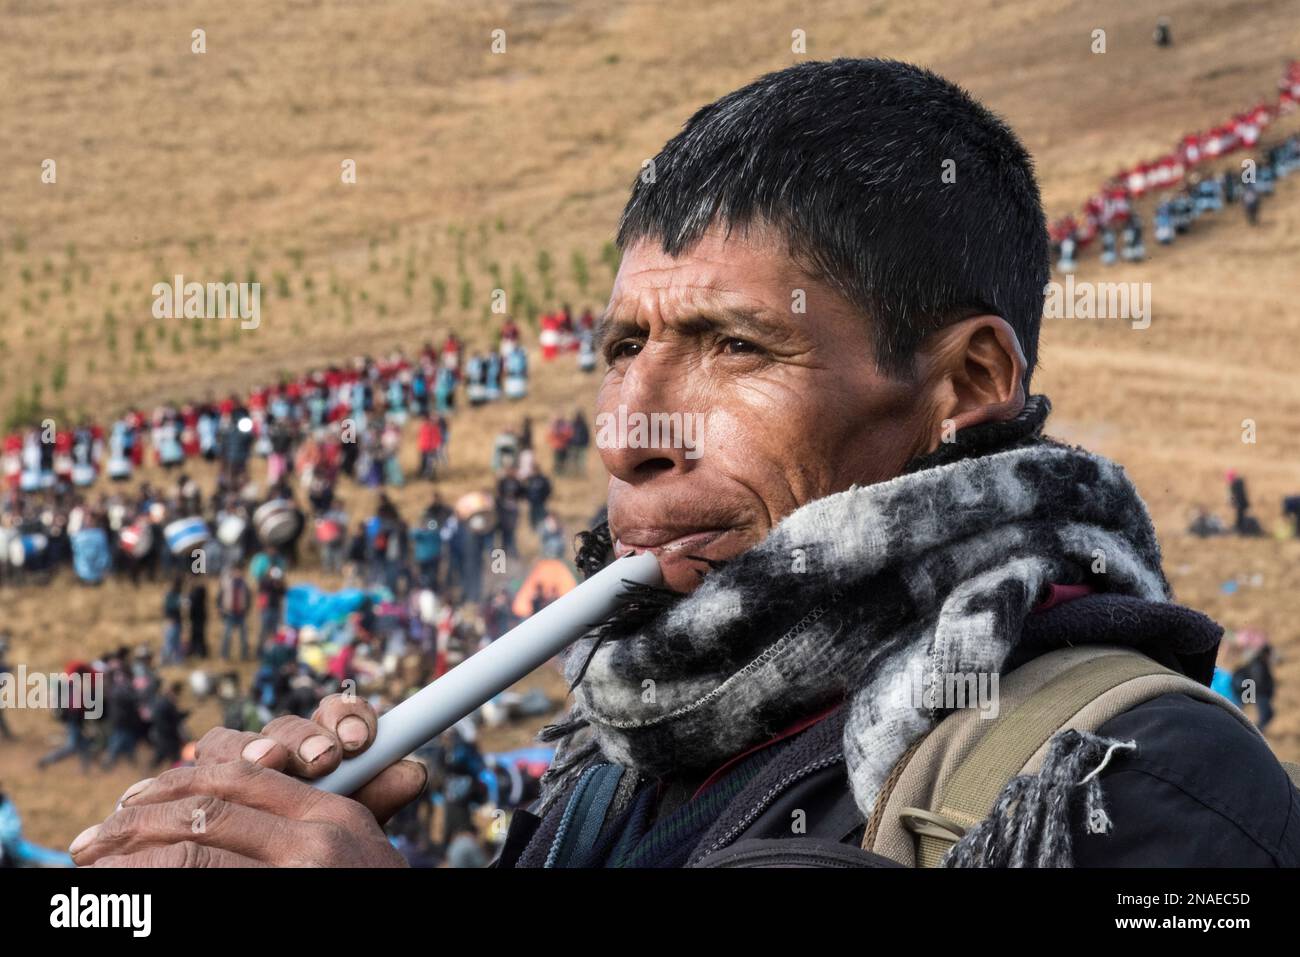 Pilgrims playing the flute, Qullyurit'i Festival Stock Photo